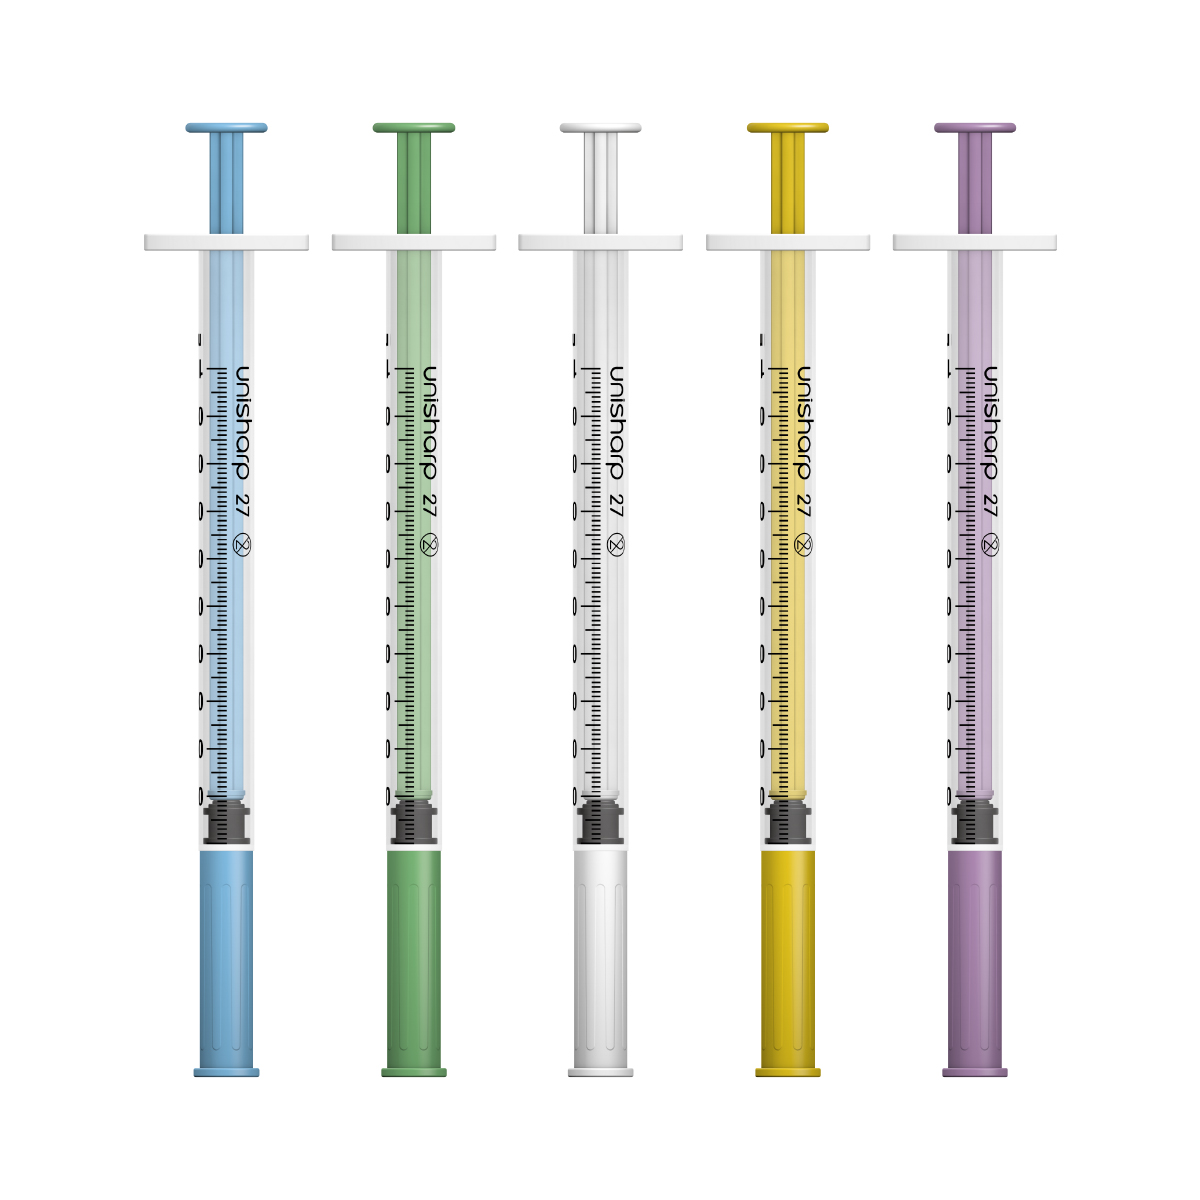 Unisharp 1ml 27G fixed needle syringe (Australia)